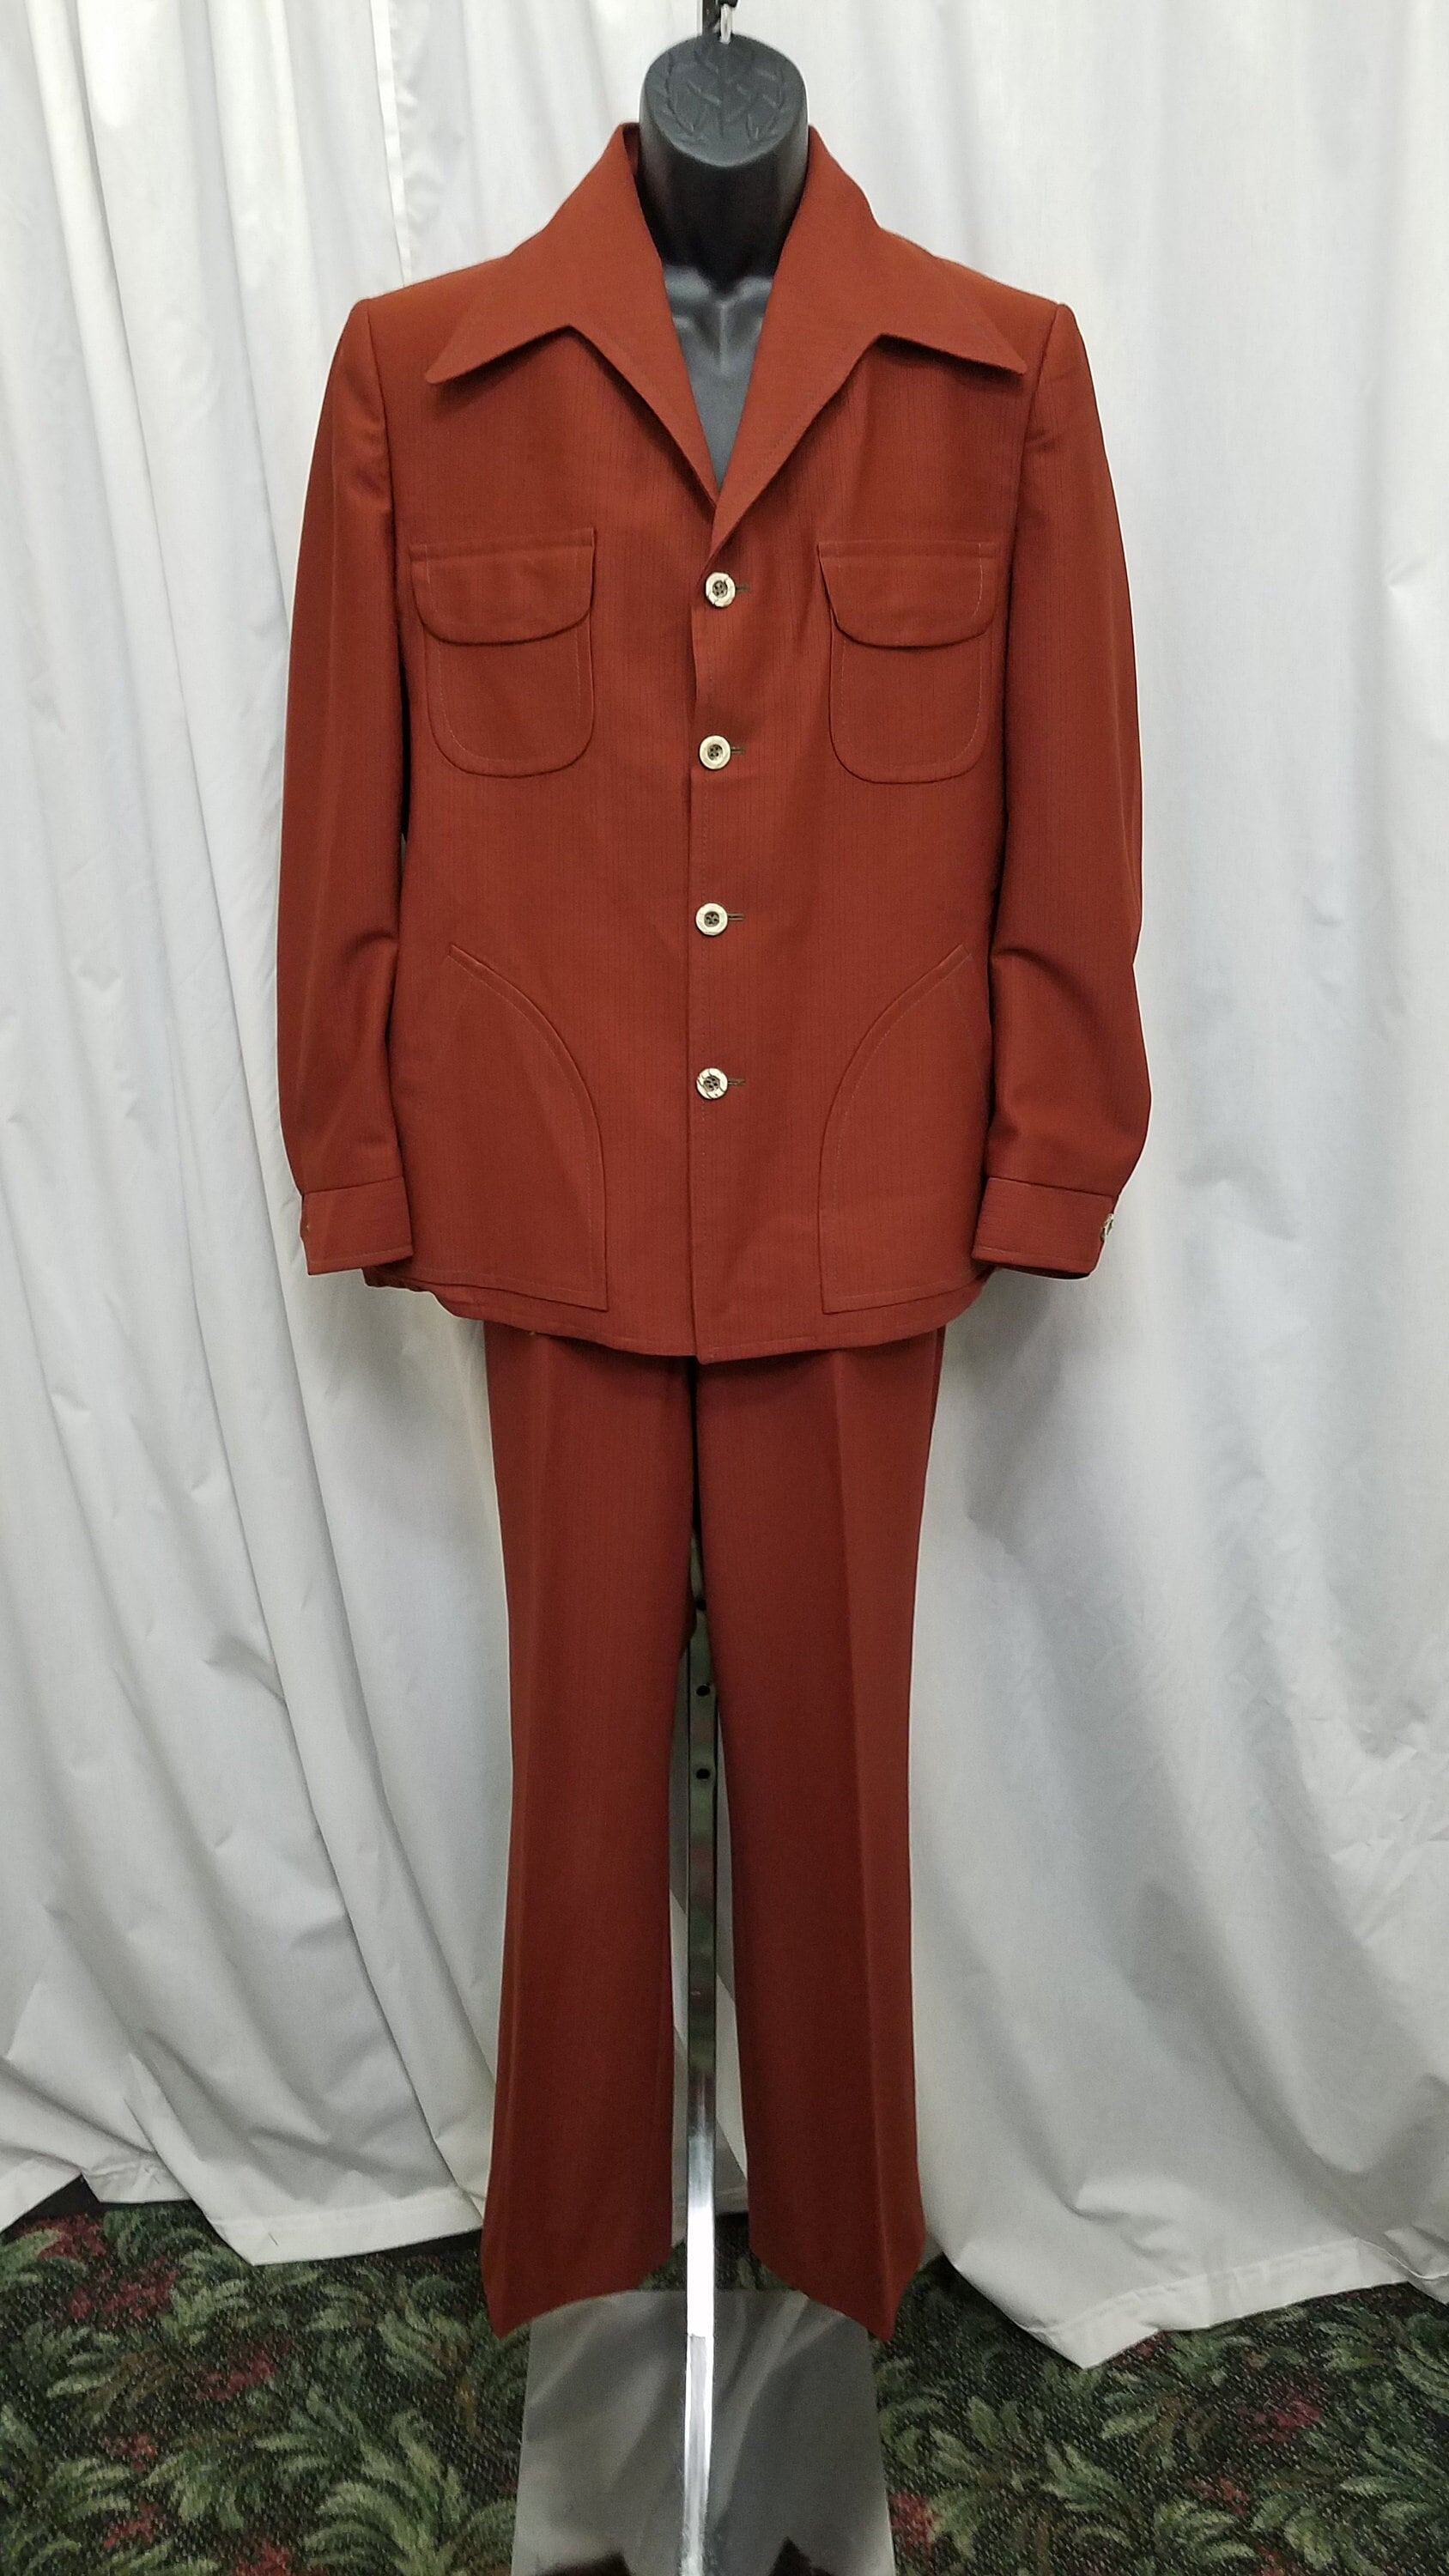 Vintage Red Leisure Suit, 1970s Ladies Pant Suit Size M -  Canada